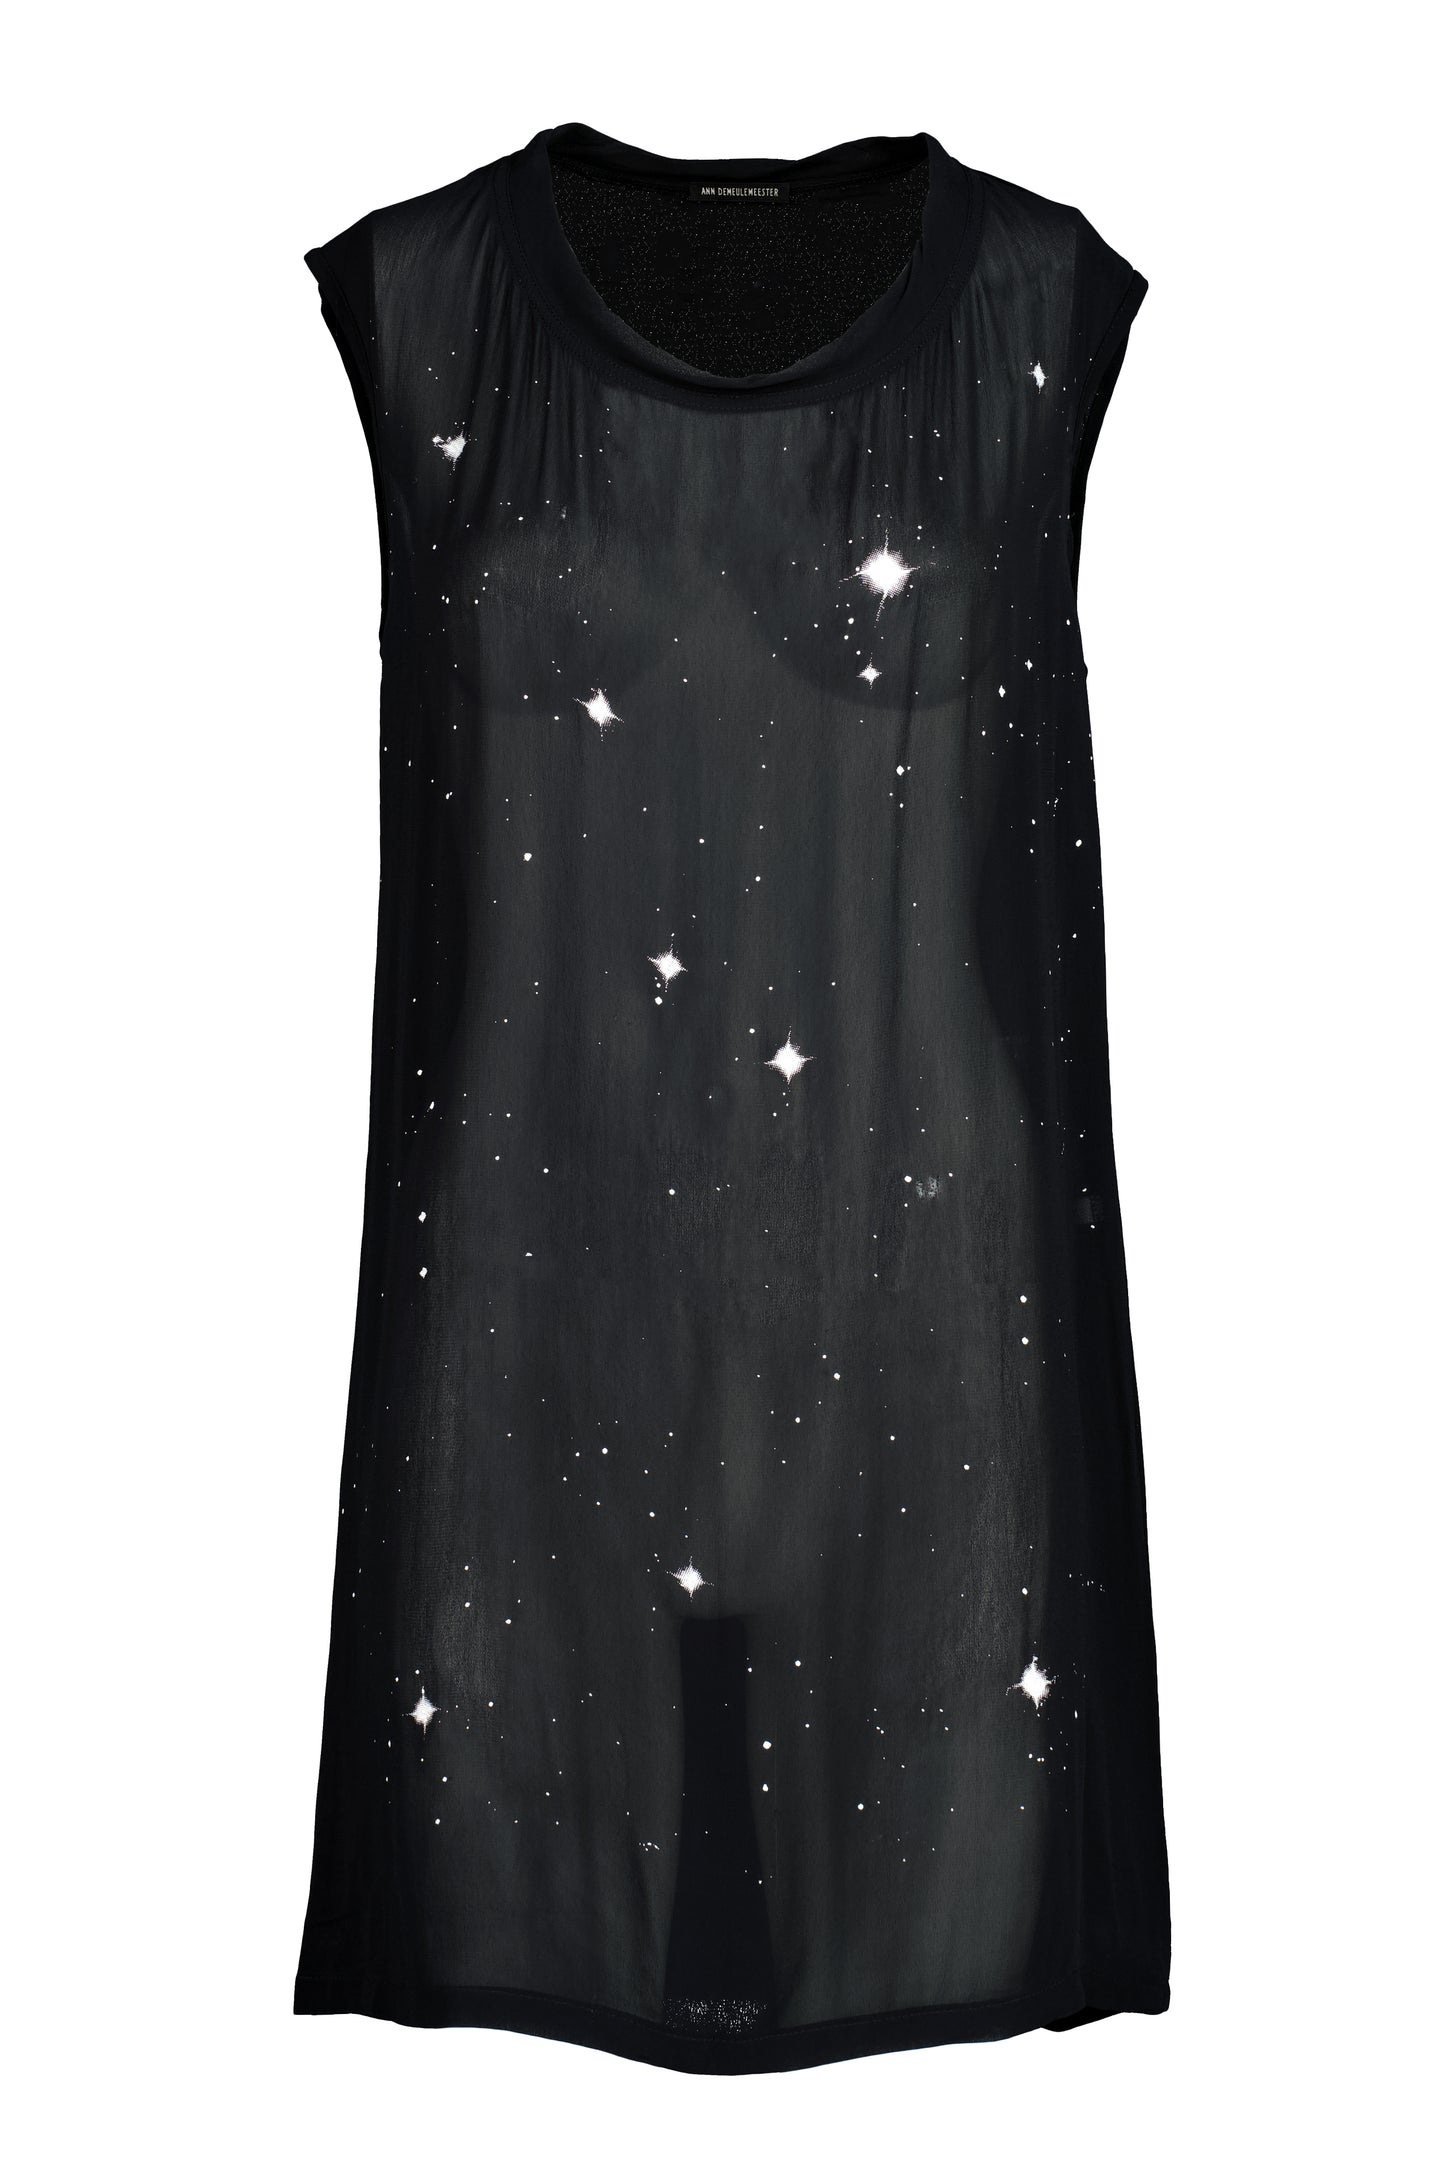 ANN DEMEULEMEESTER FW03 STARRY NIGHT DRESS